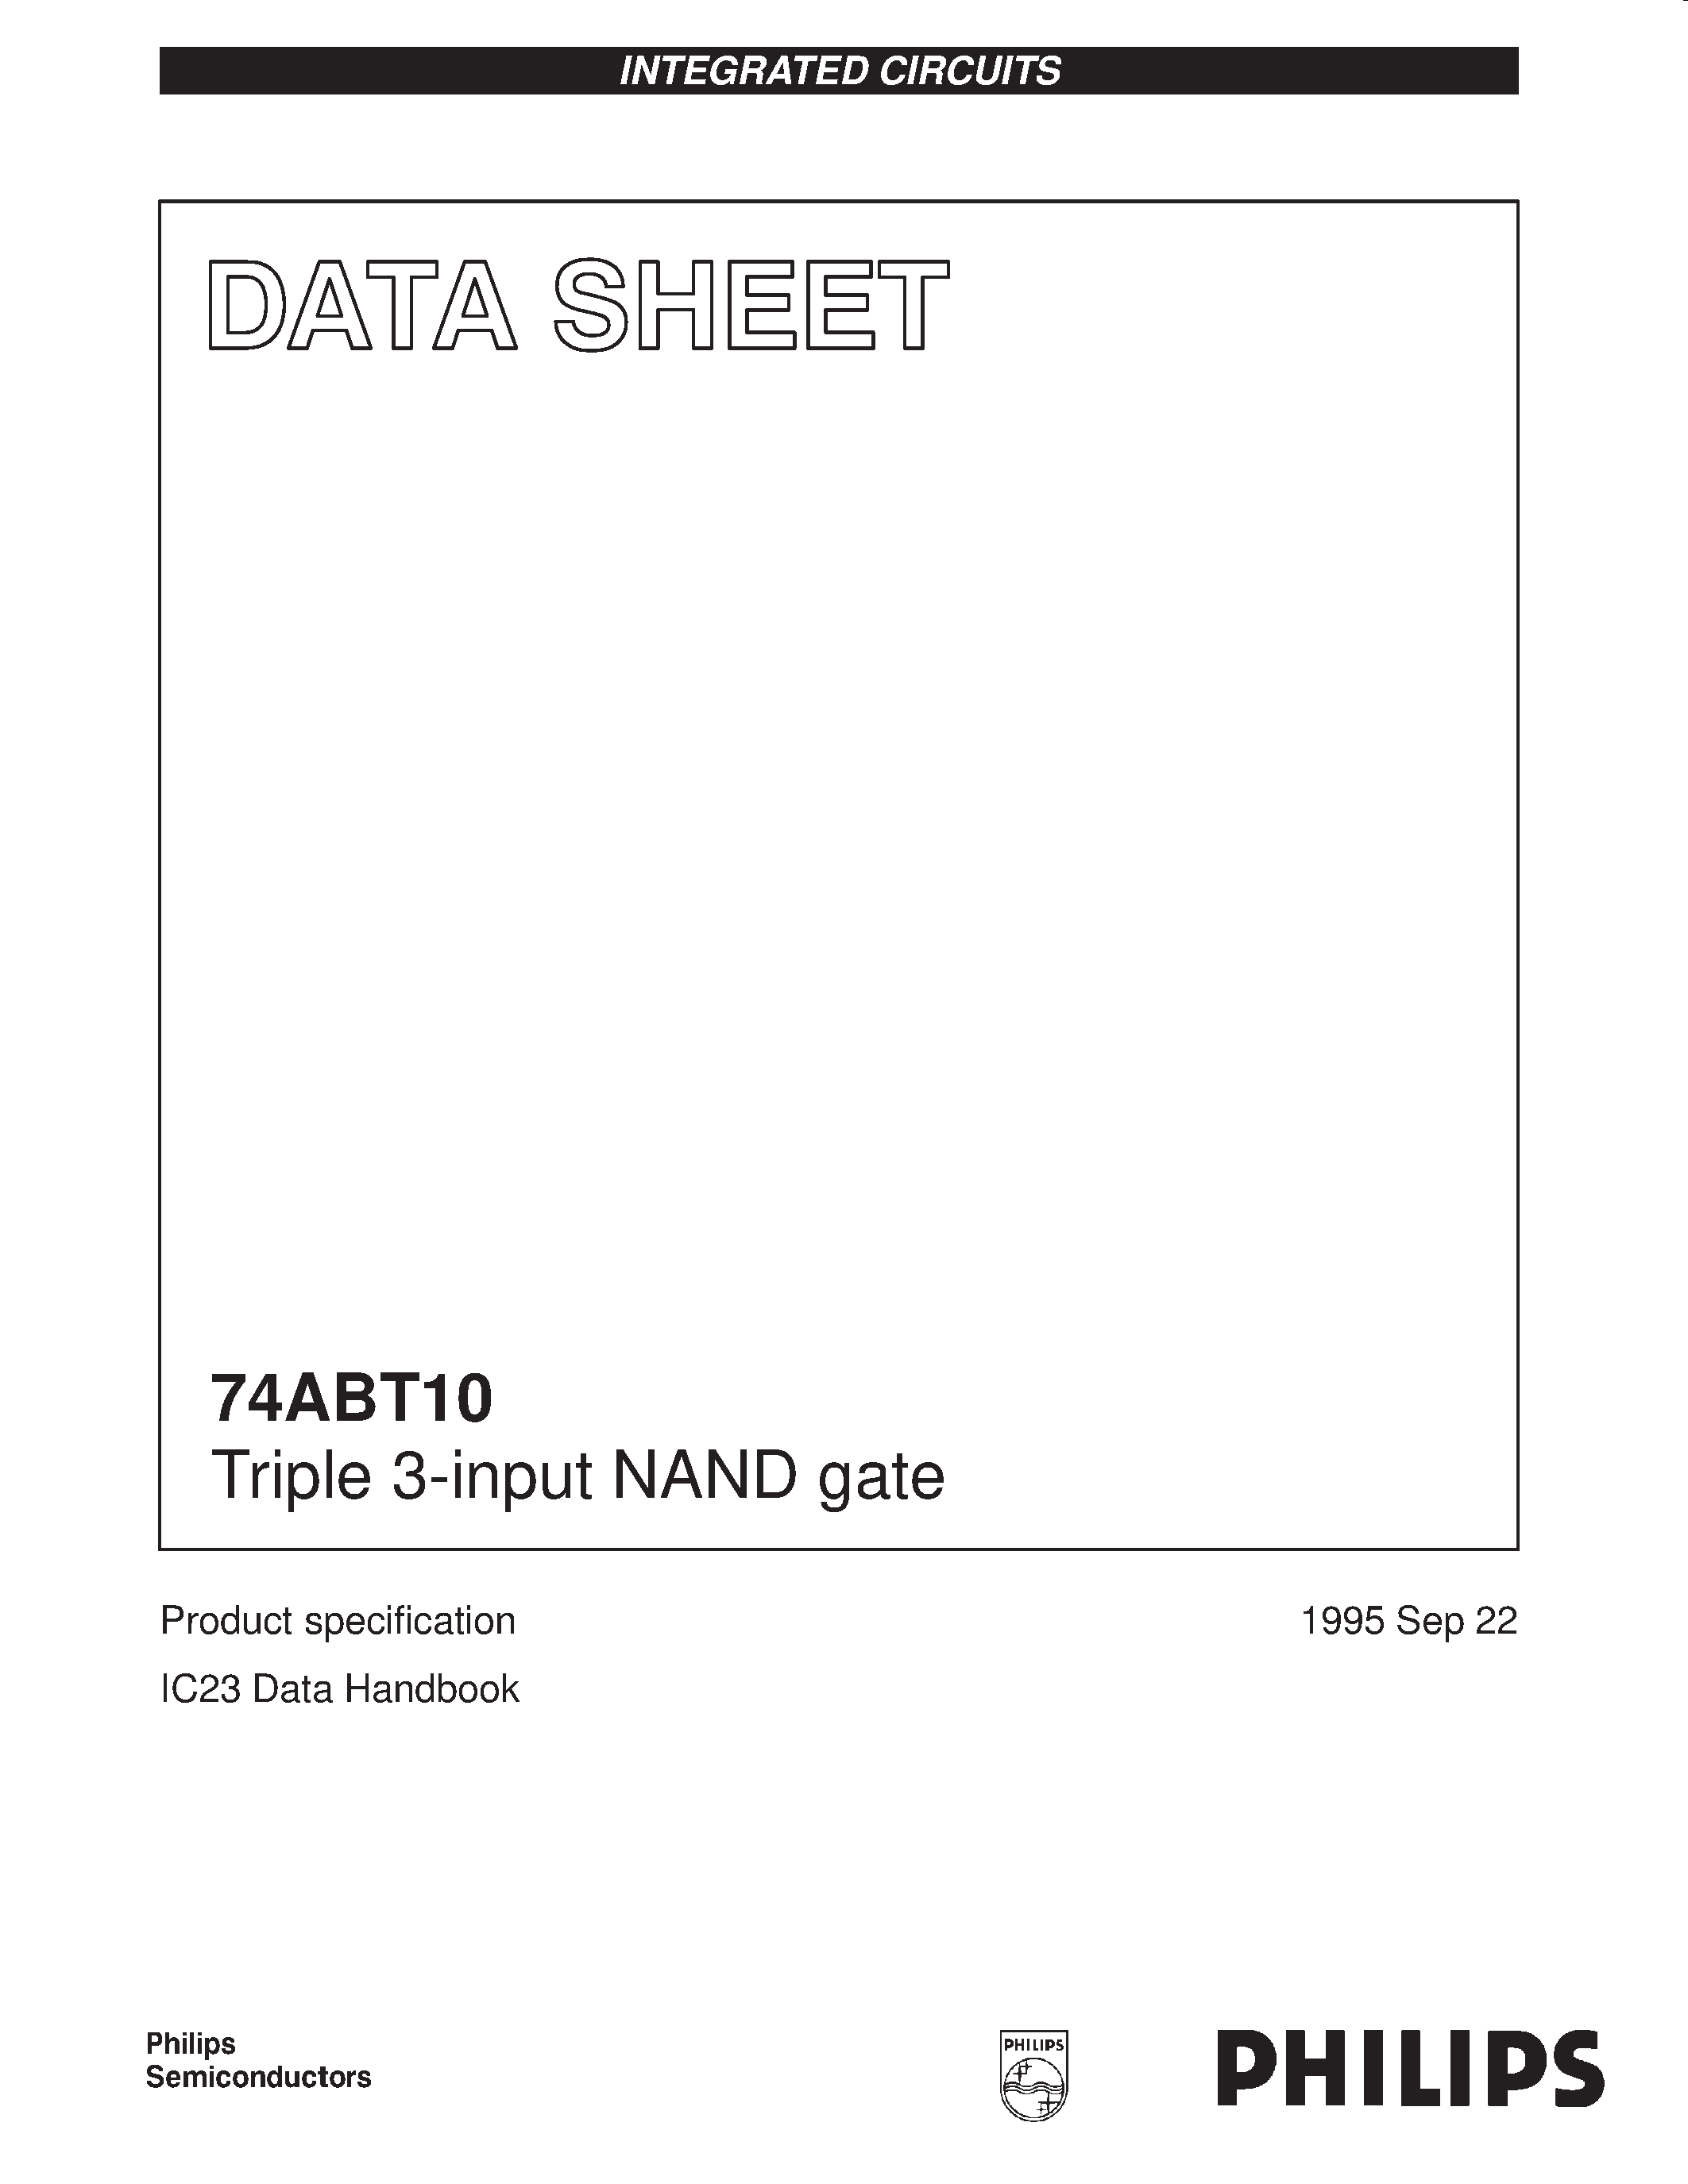 Даташит 74ABT10 - Triple 3-input NAND gate страница 1